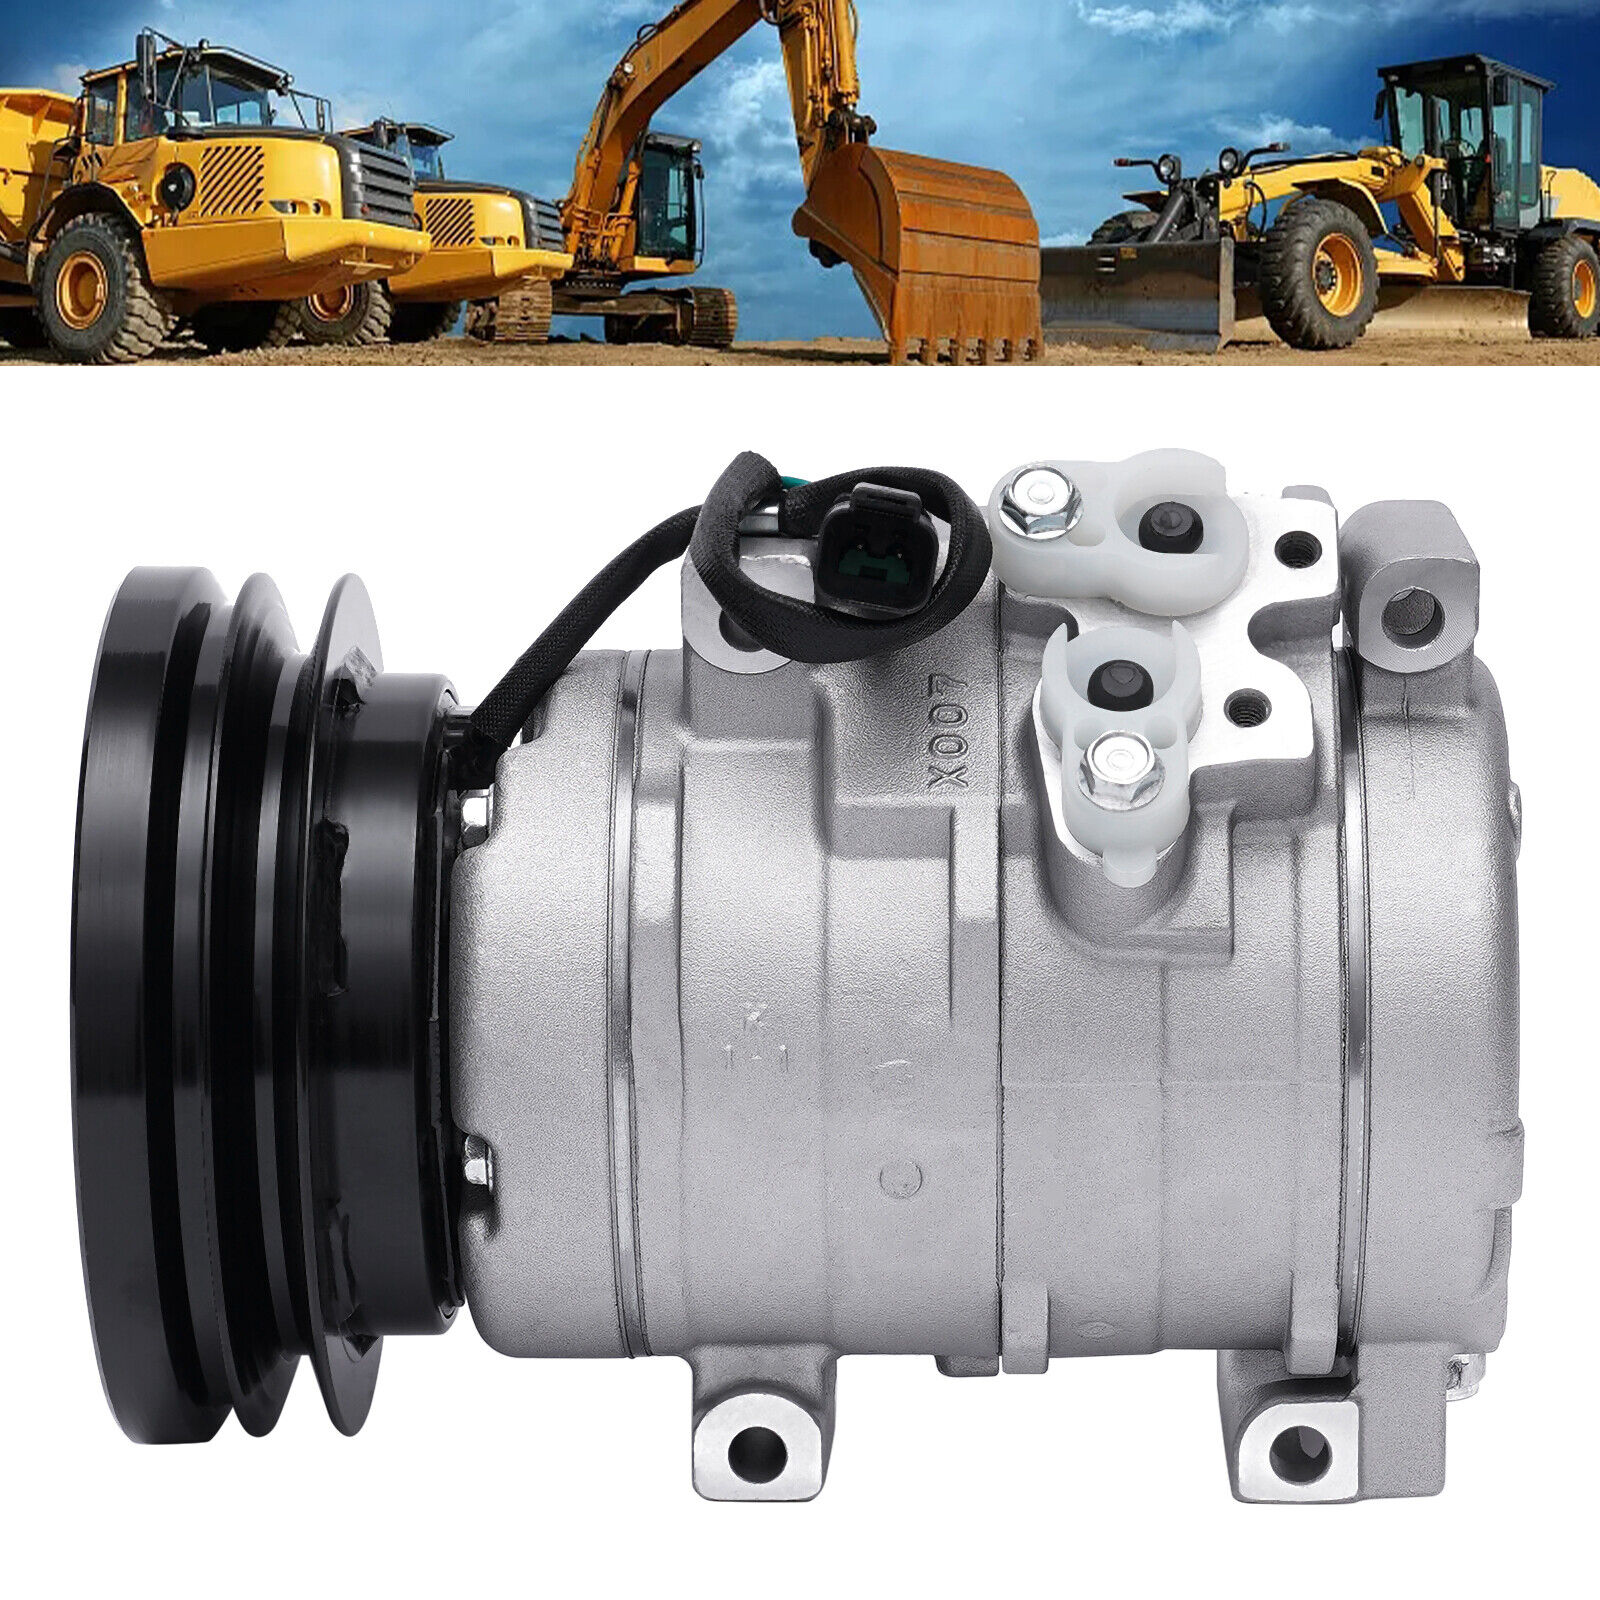 For Excavator Caterpillar 320C/320D A/C AC Compressor 176-1895 201-3837 231-6984